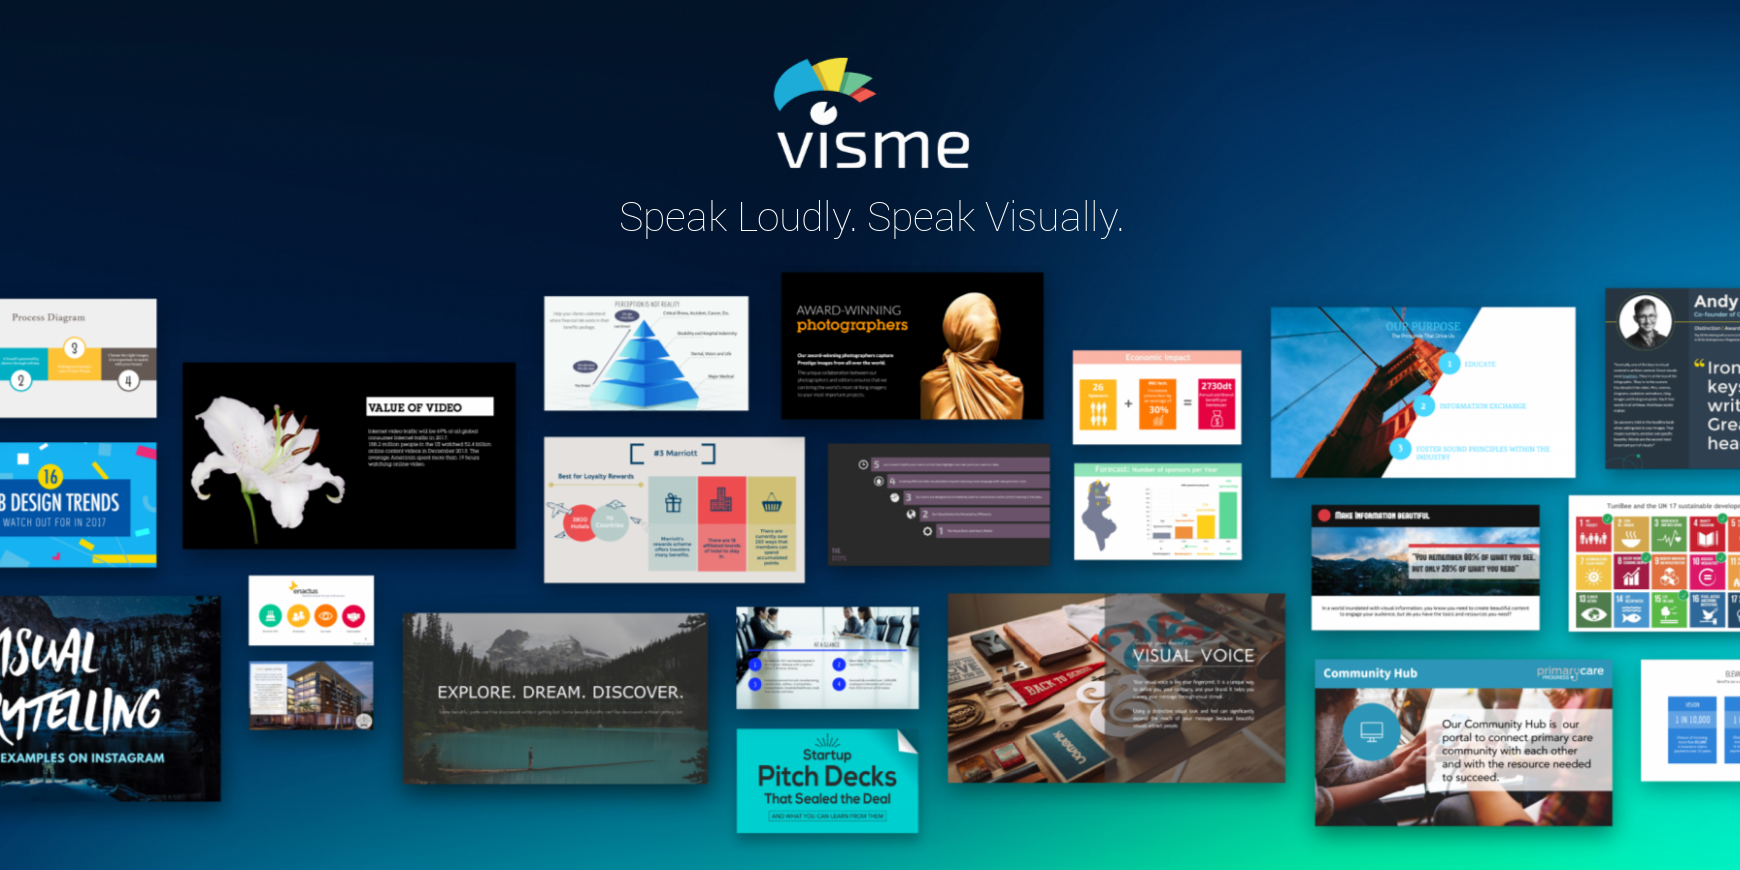 Find detailed information about Visme